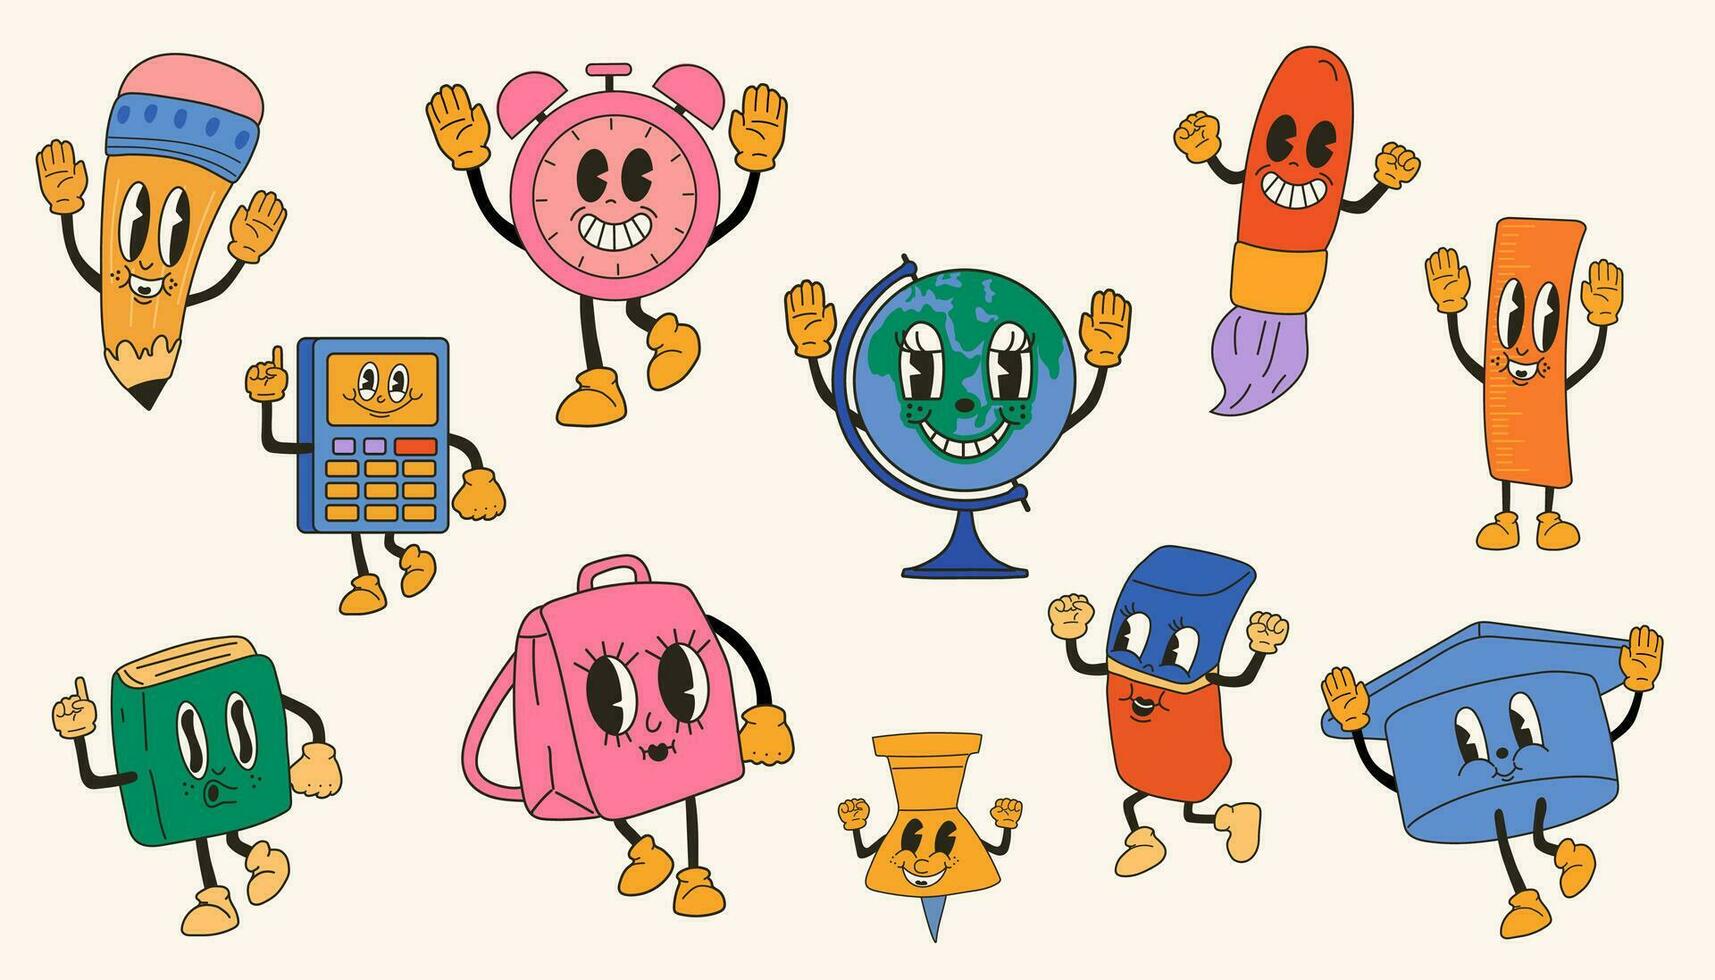 conjunto de colegio articulo 30s dibujos animados mascota personaje 40 años, años 50, 60s antiguo animación estilo. dibujos animados alegre colegio mascota vector